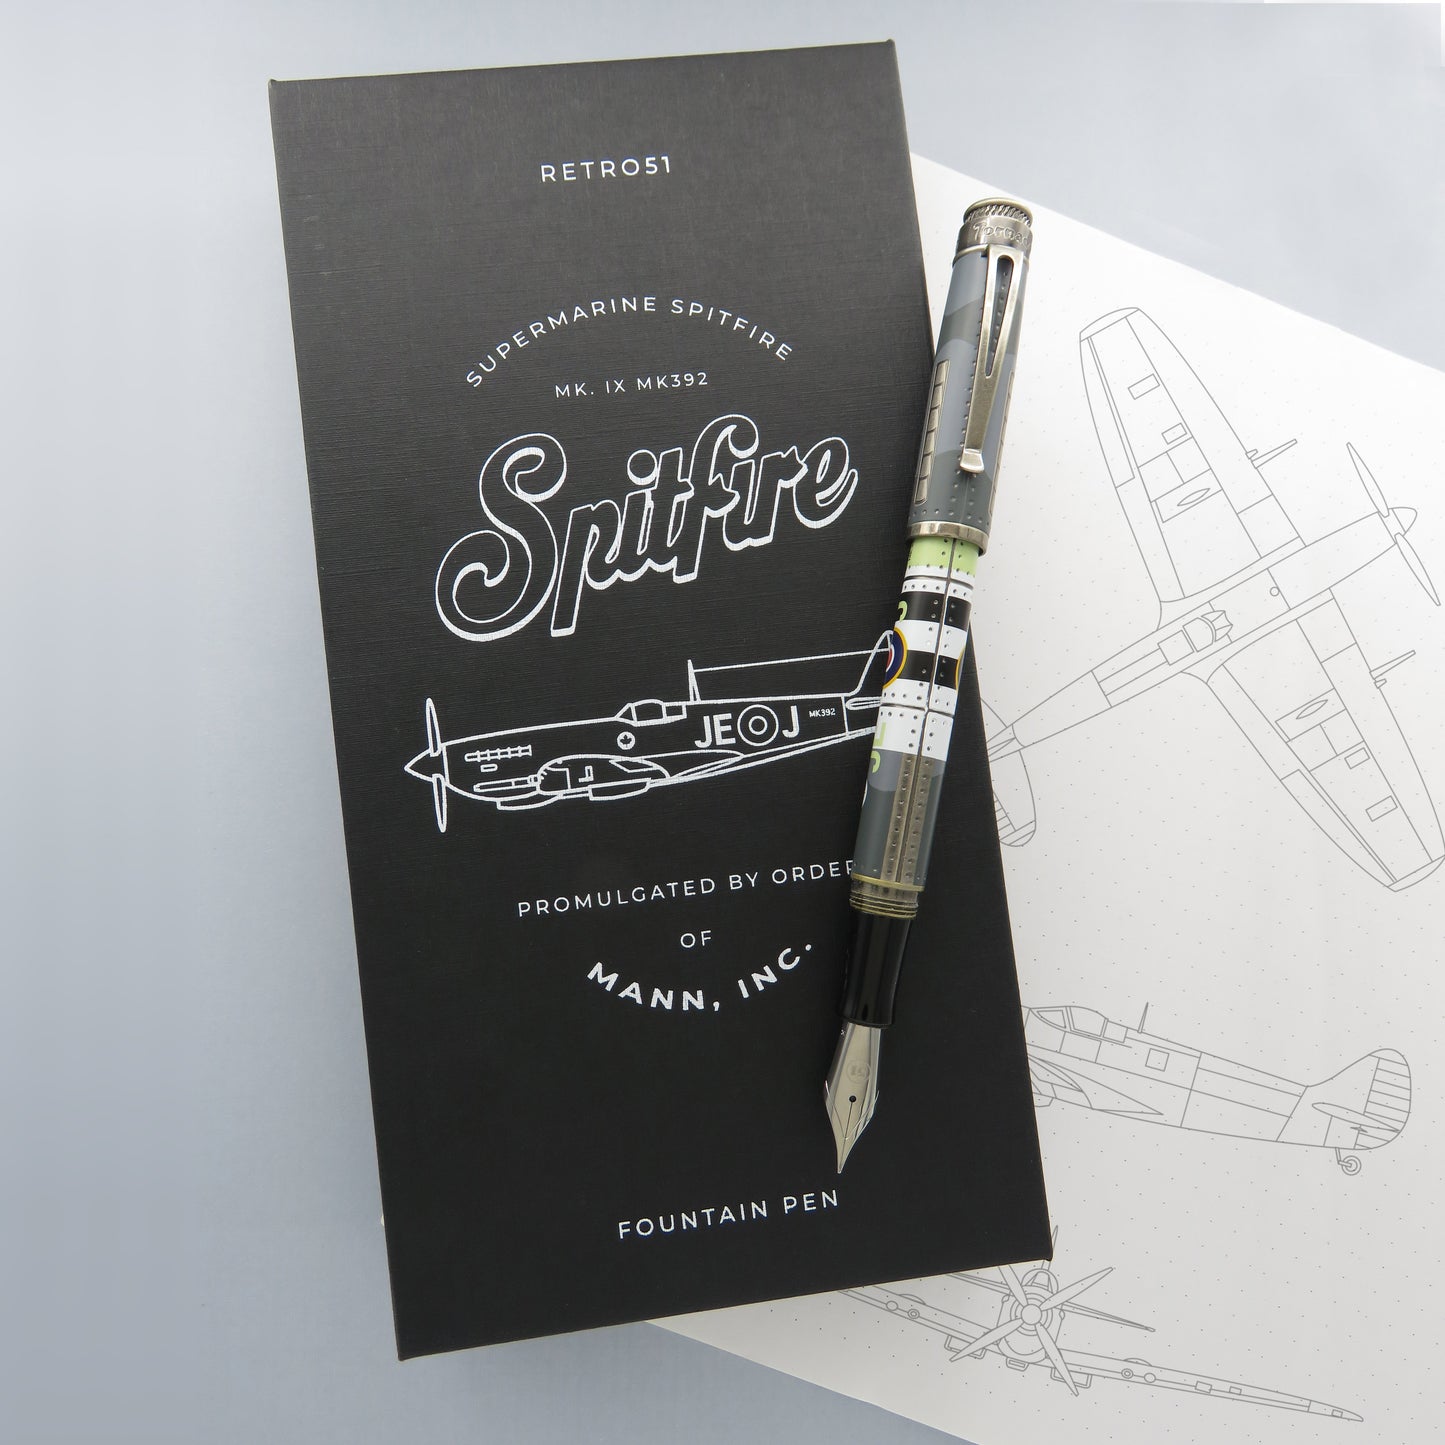 Retro 51 Fountain Pen - Spitfire (Mann Inc Exclusive)